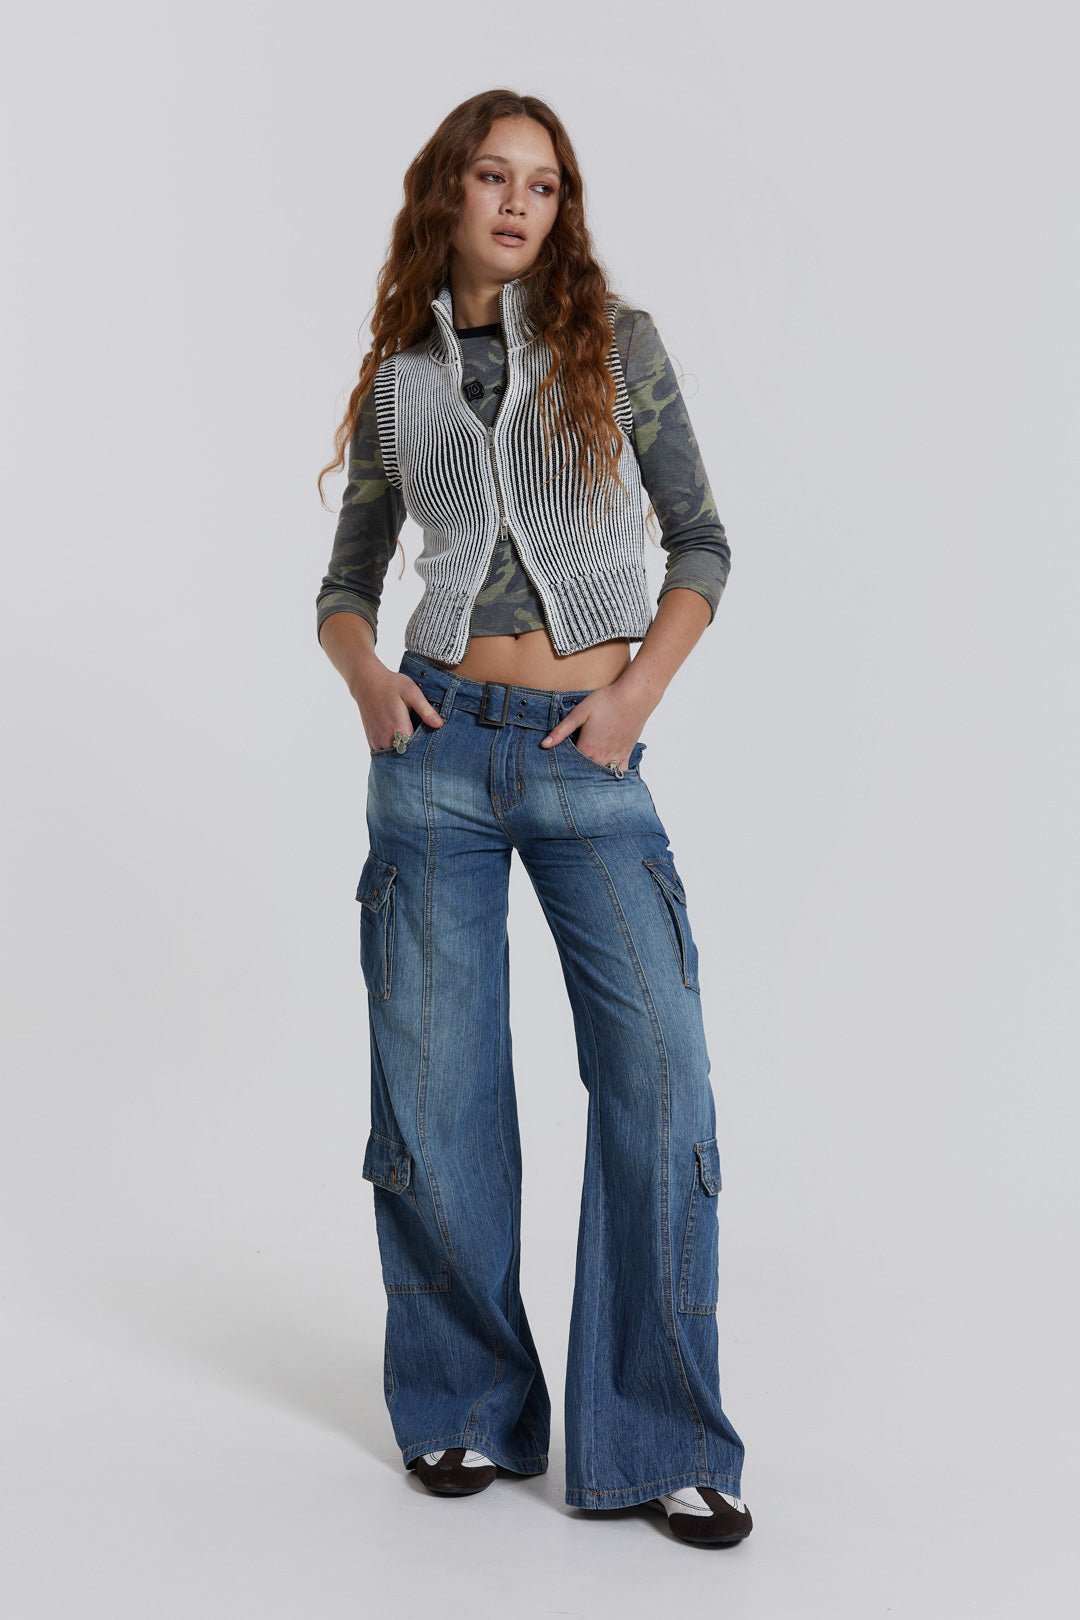 Jeans Baggy Cargo Pants Women | Wide Leg Cargo Jeans Womens | Baggy Blue  Jeans Women - Jeans - Aliexpress